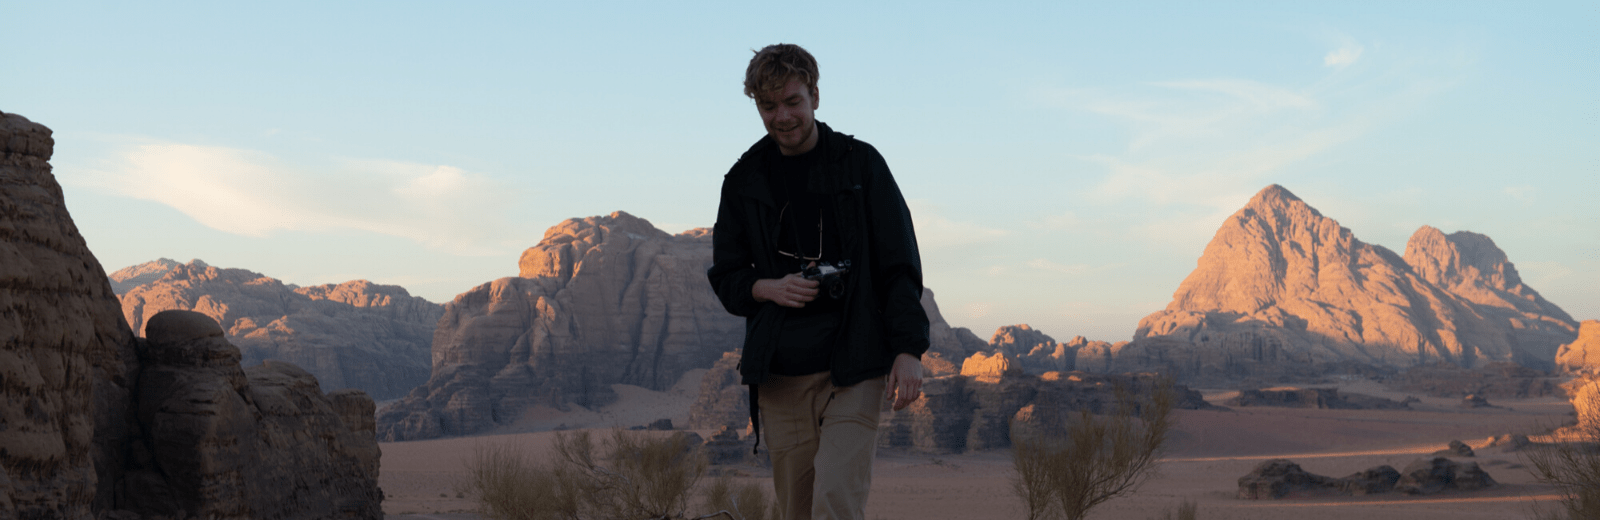 Wandelen en overnachten in de Wadi Rum. Jordan Desert Journeys